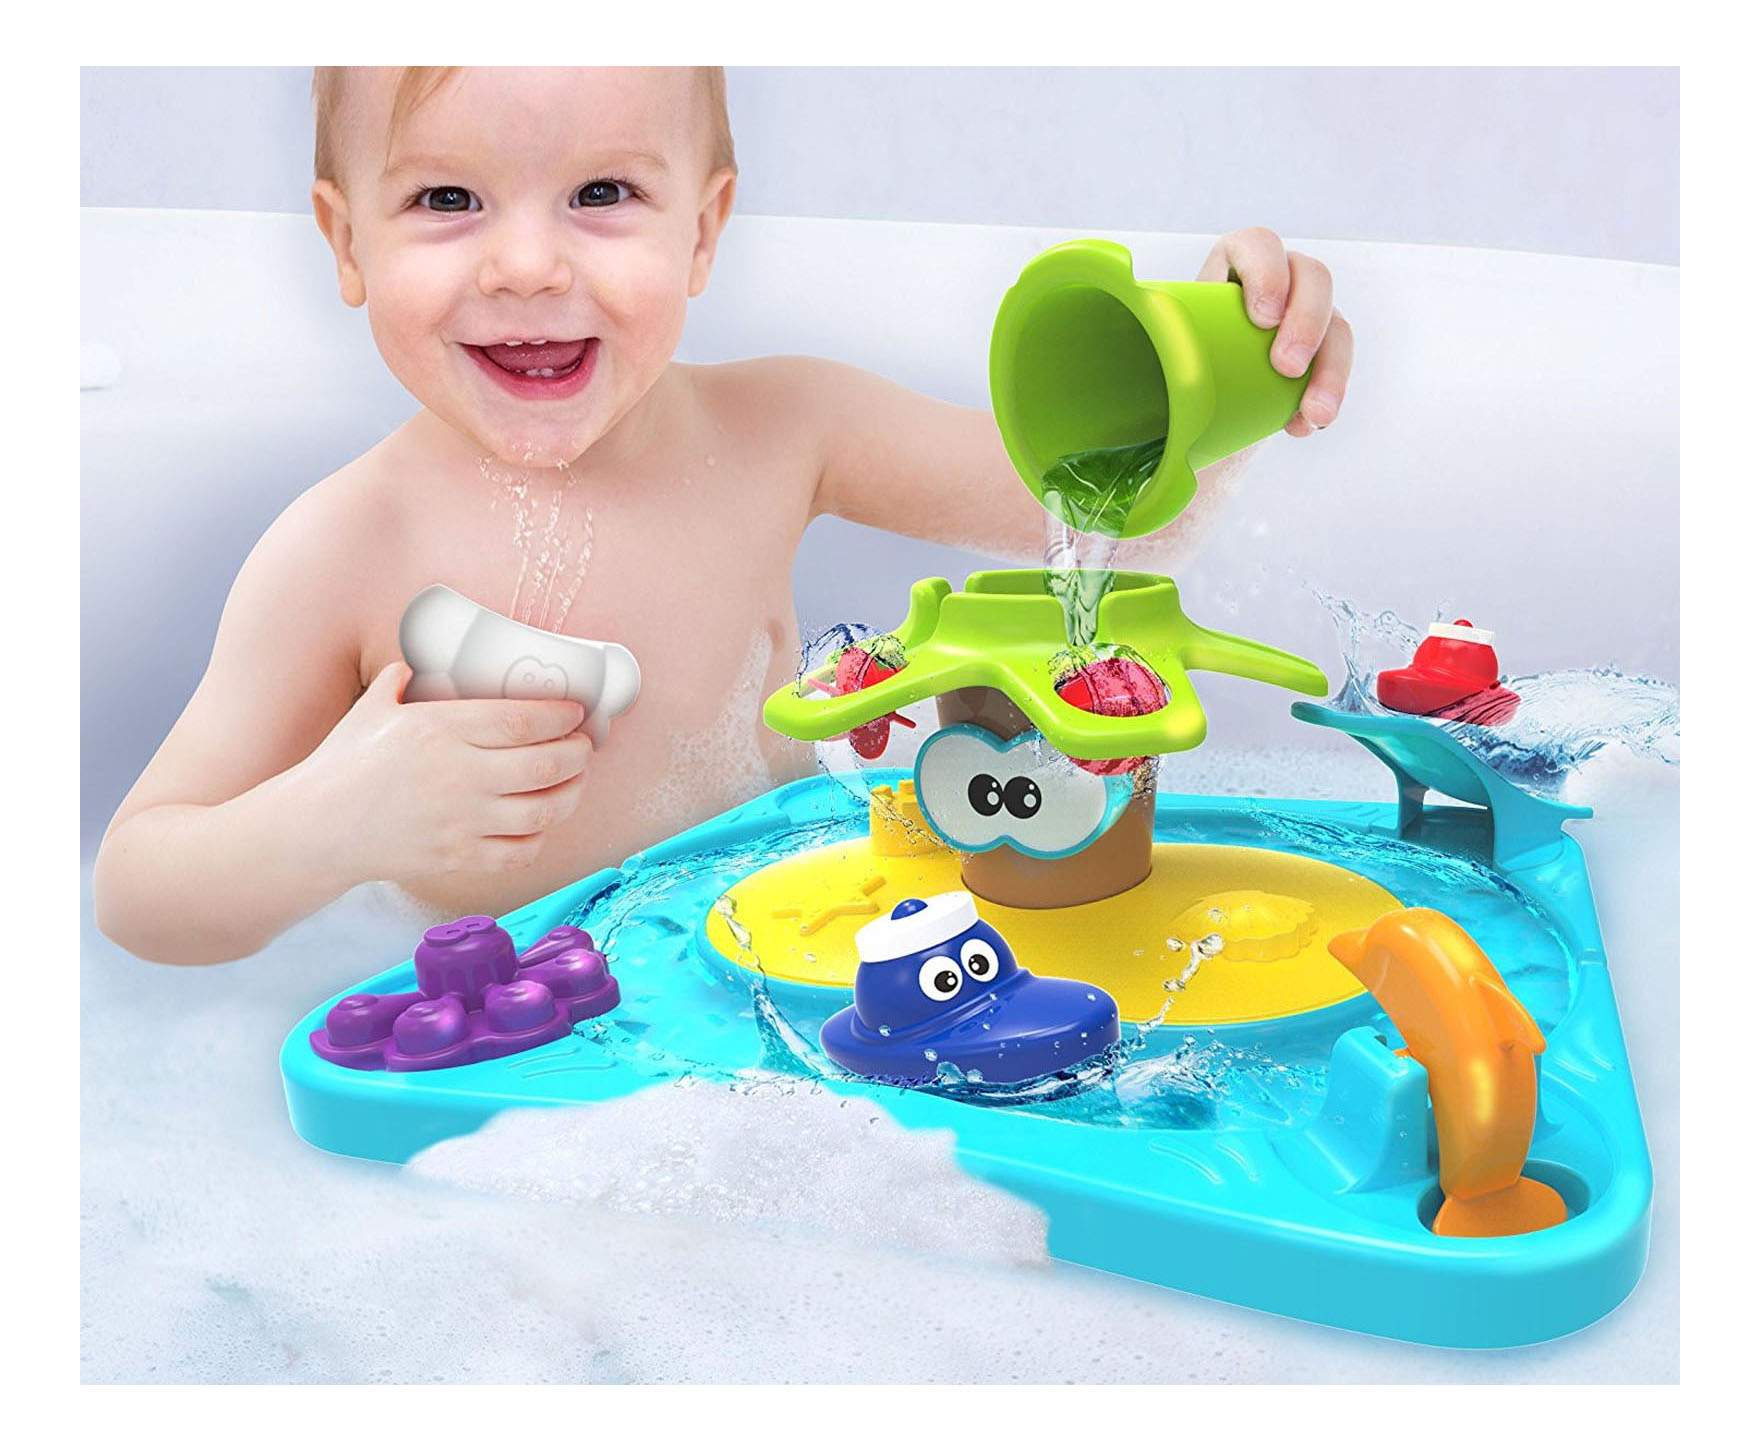 Набор для ванны игрушки. Детская игрушка для ванны. Игрушки для купания малышей. Интересные игрушки для ванной. Игрушки в ванную для детей.